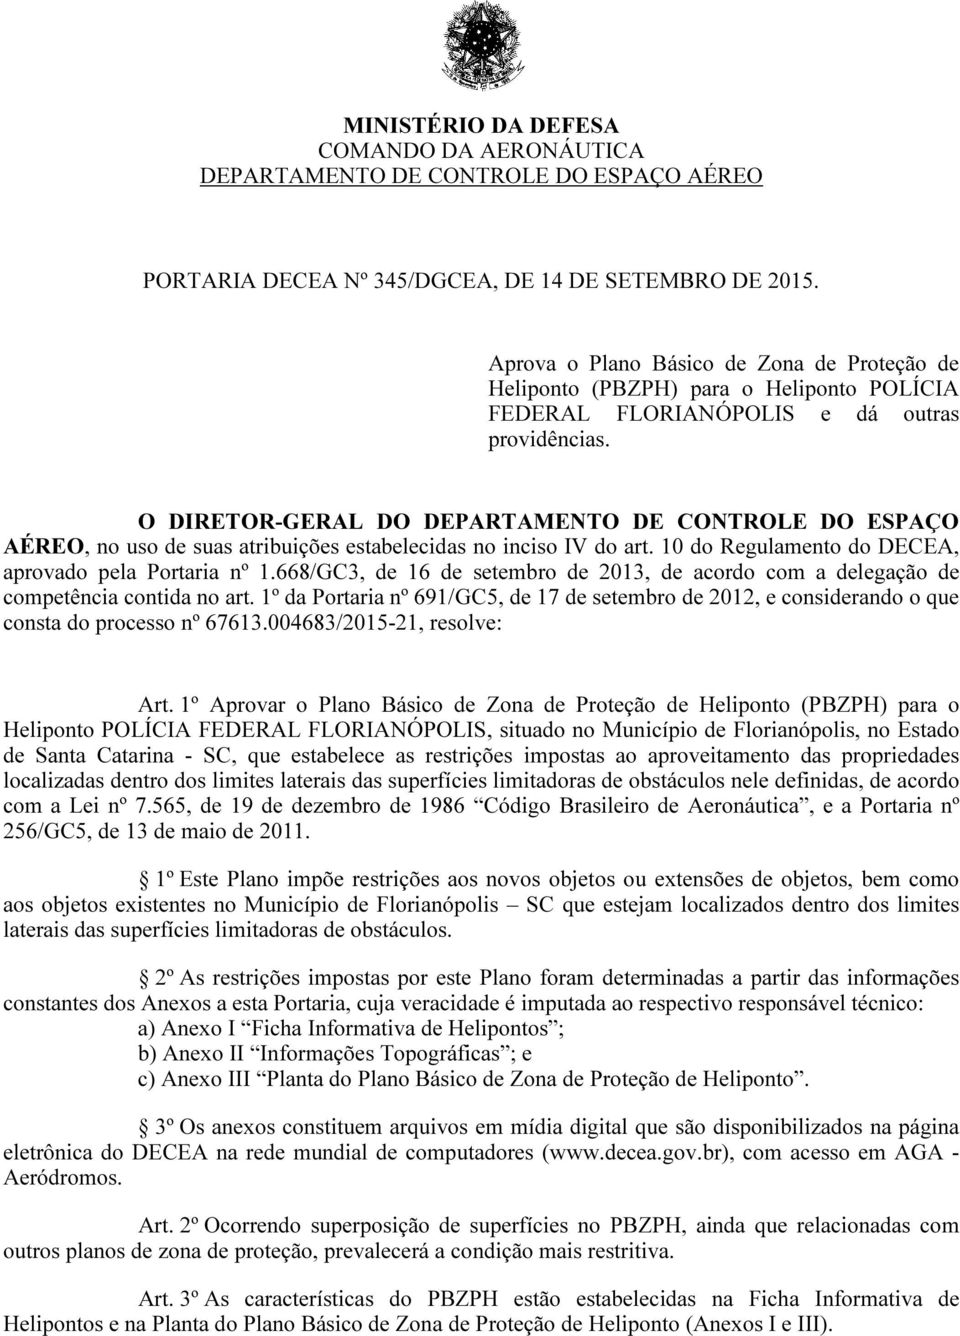 O DIRETOR-GERAL DO DEPARTAMENTO DE CONTROLE DO ESPAÇO AÉREO, no uso de suas atribuições estabelecidas no inciso IV do art. 10 do Regulamento do DECEA, aprovado pela Portaria nº 1.